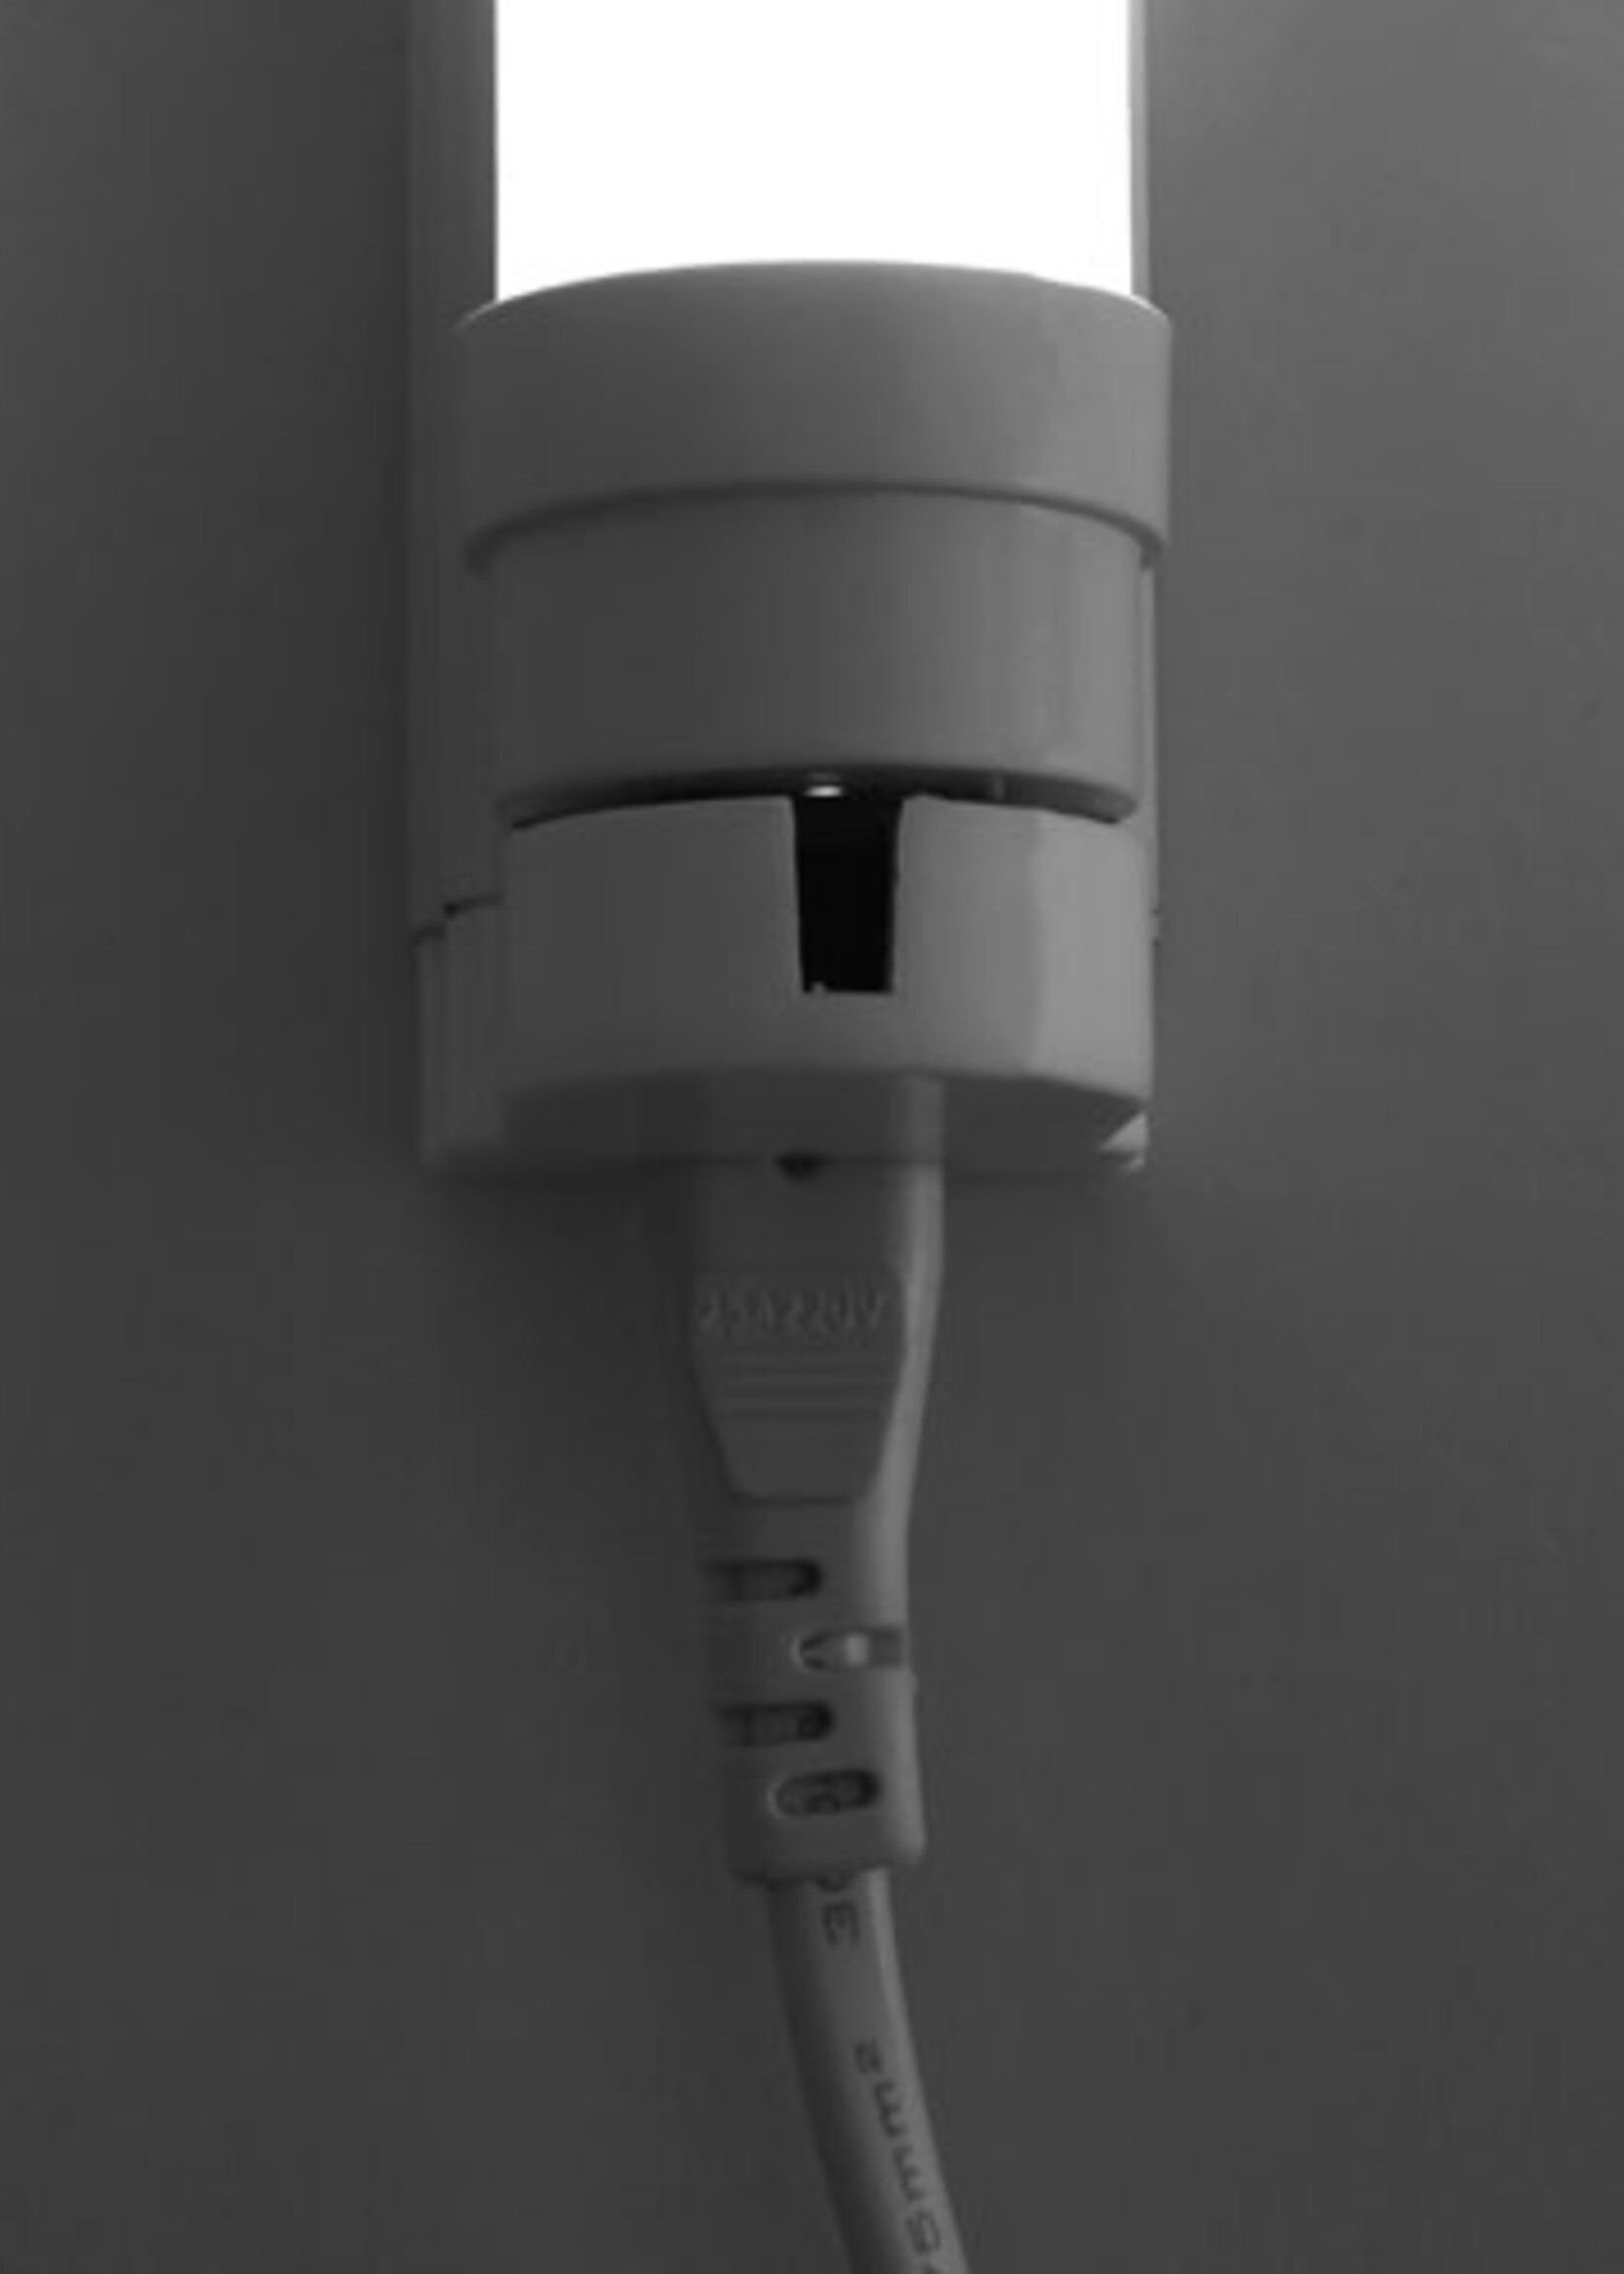 LEDWINKEL-Online T8 LED Tube light fixture 60cm